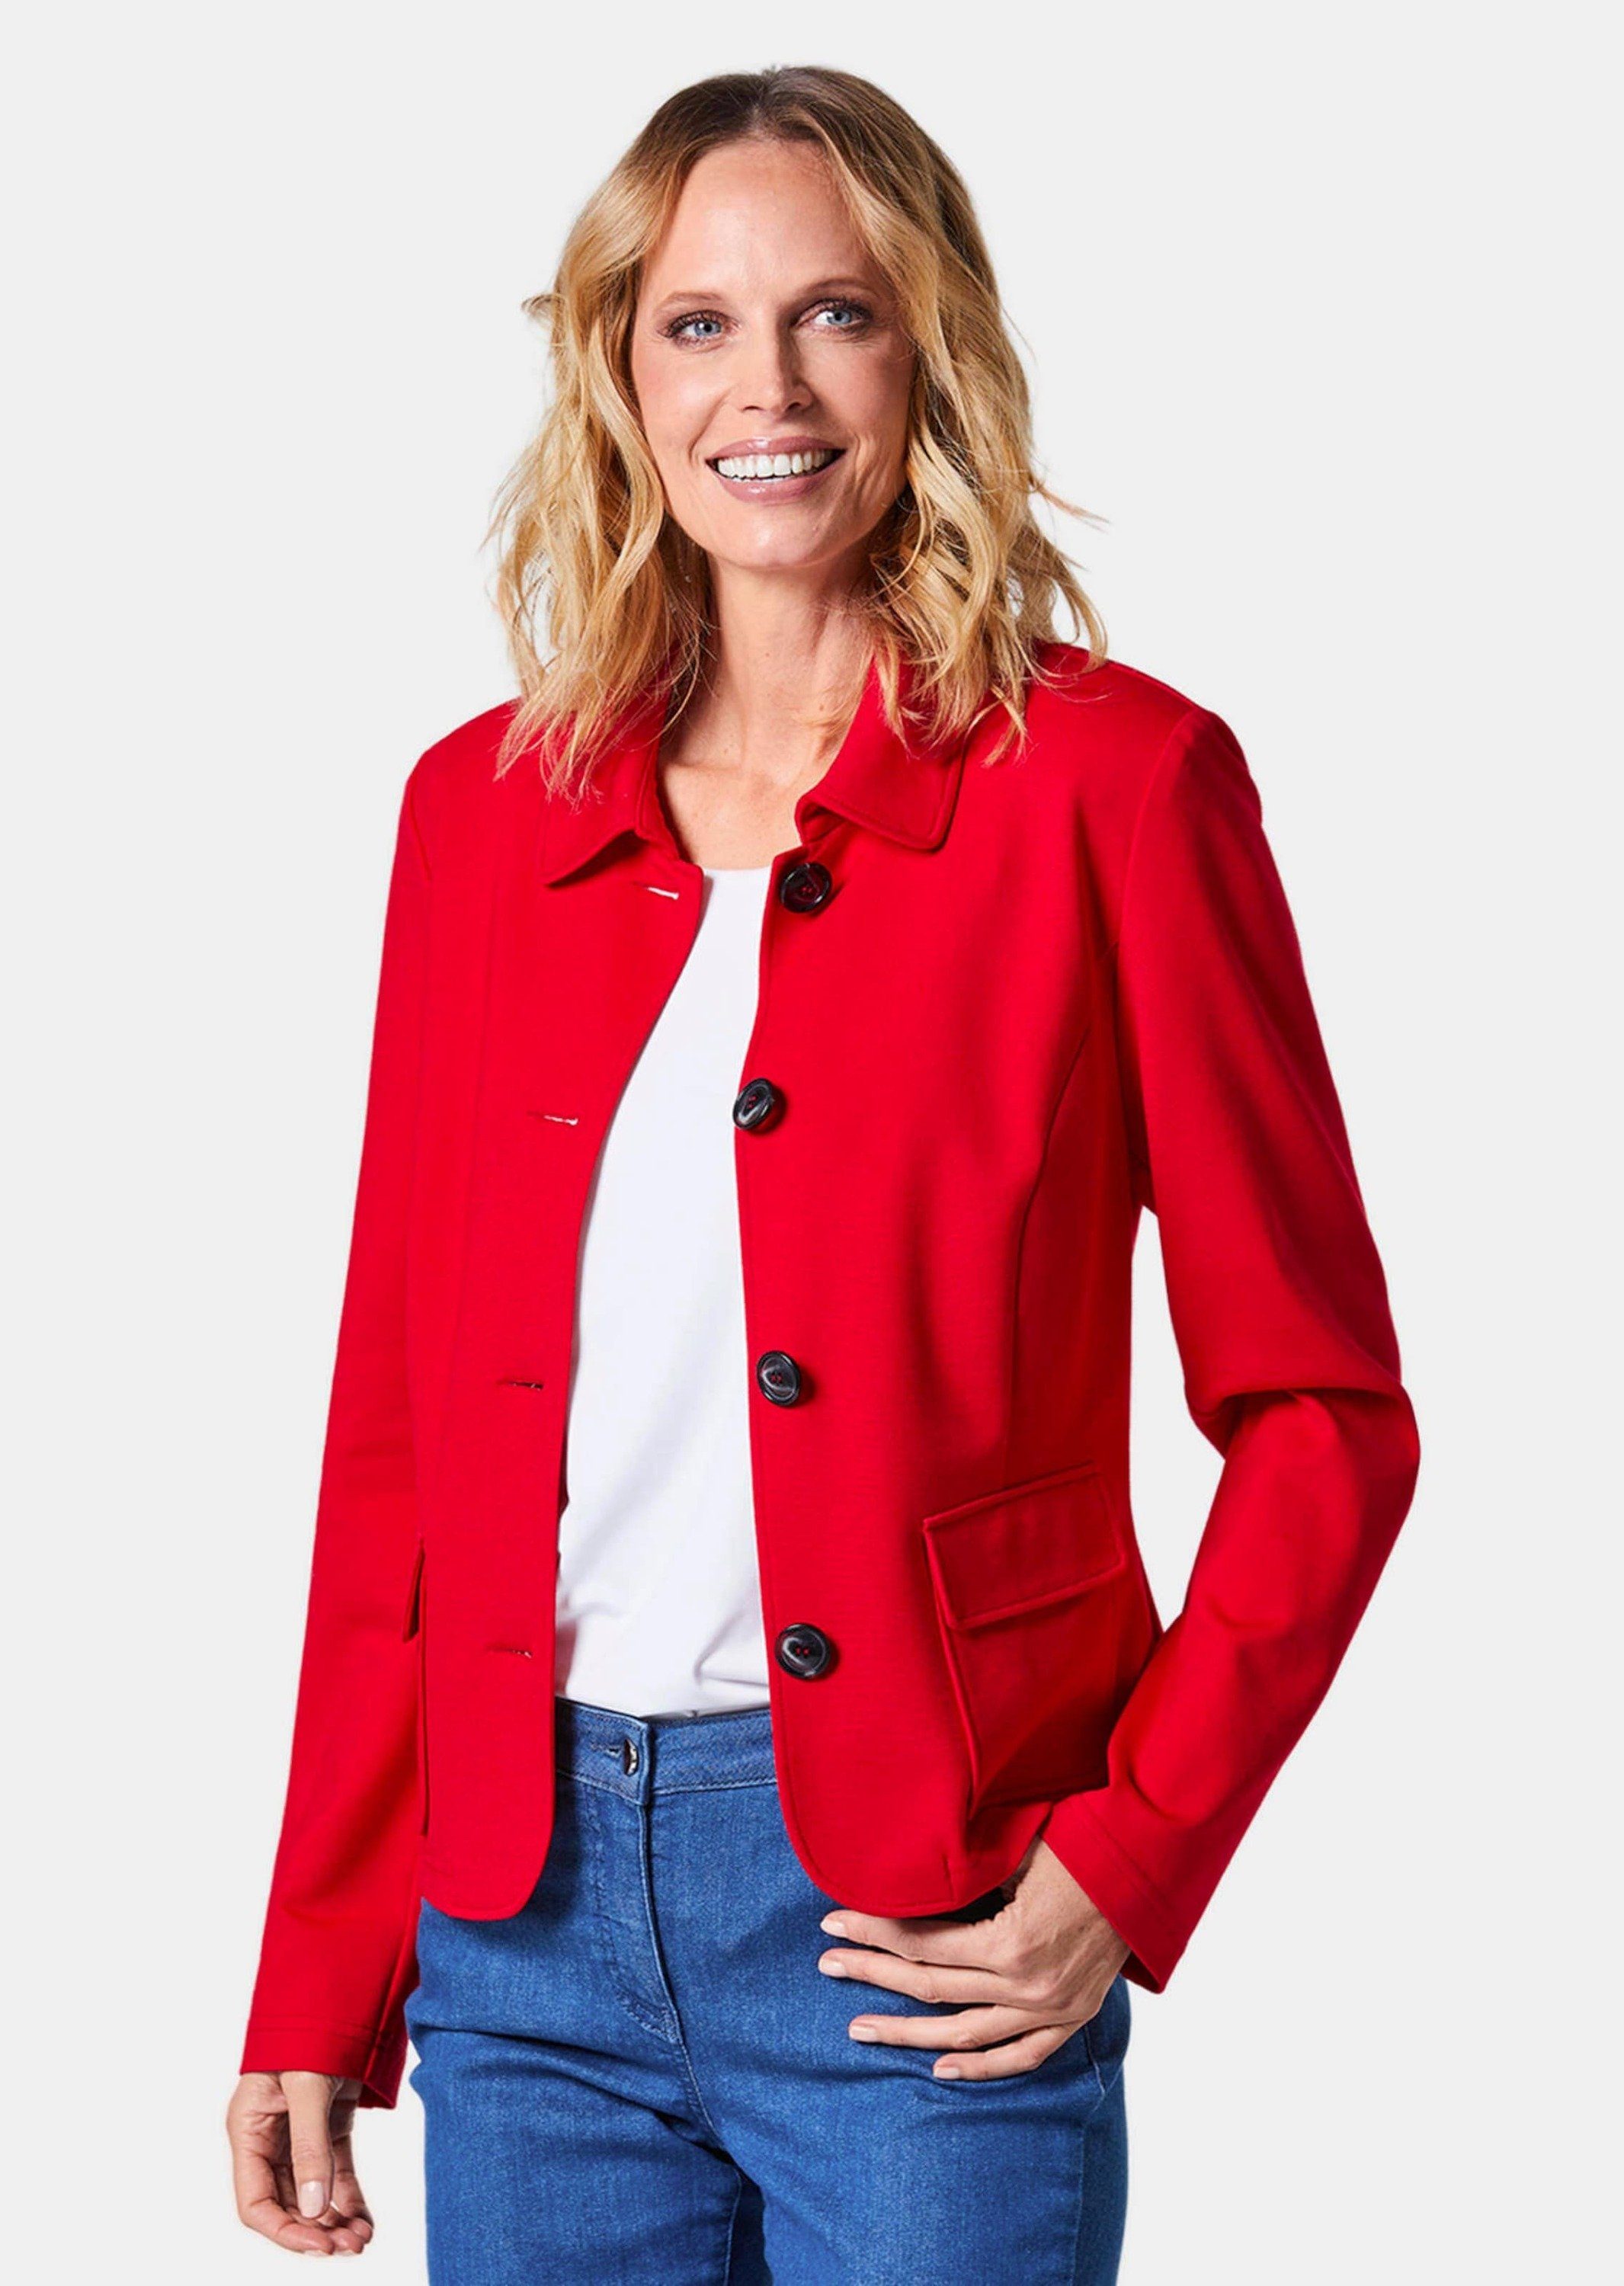 GOLDNER Outdoorjacke Kurzgröße: Leichte Jacke in glänzender Optik rot